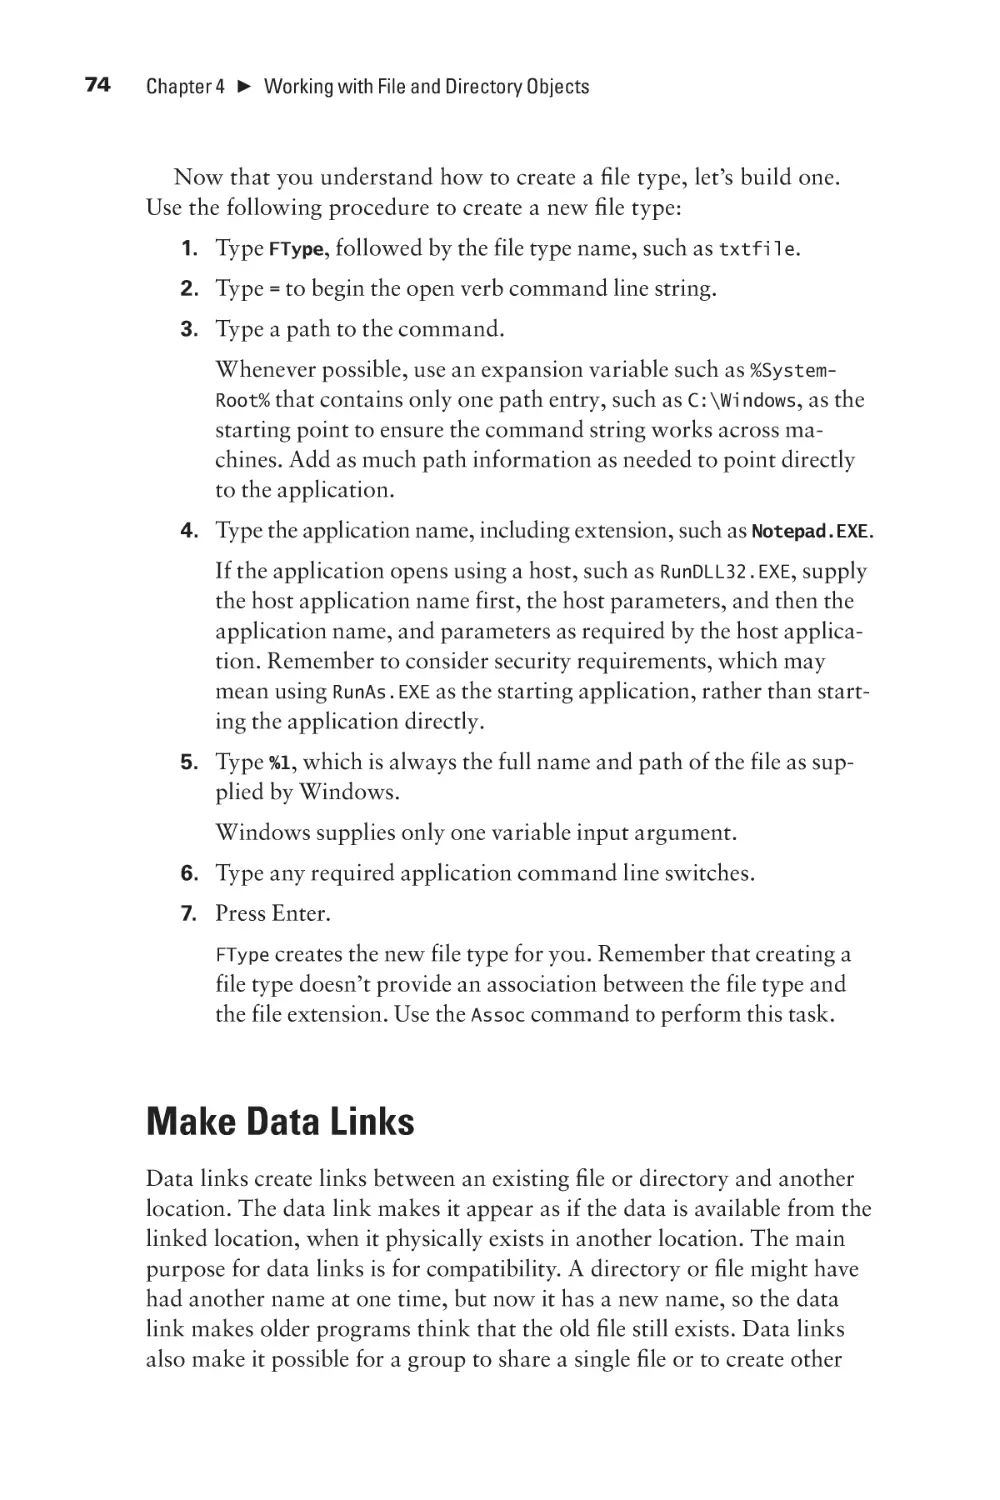 Make Data Links